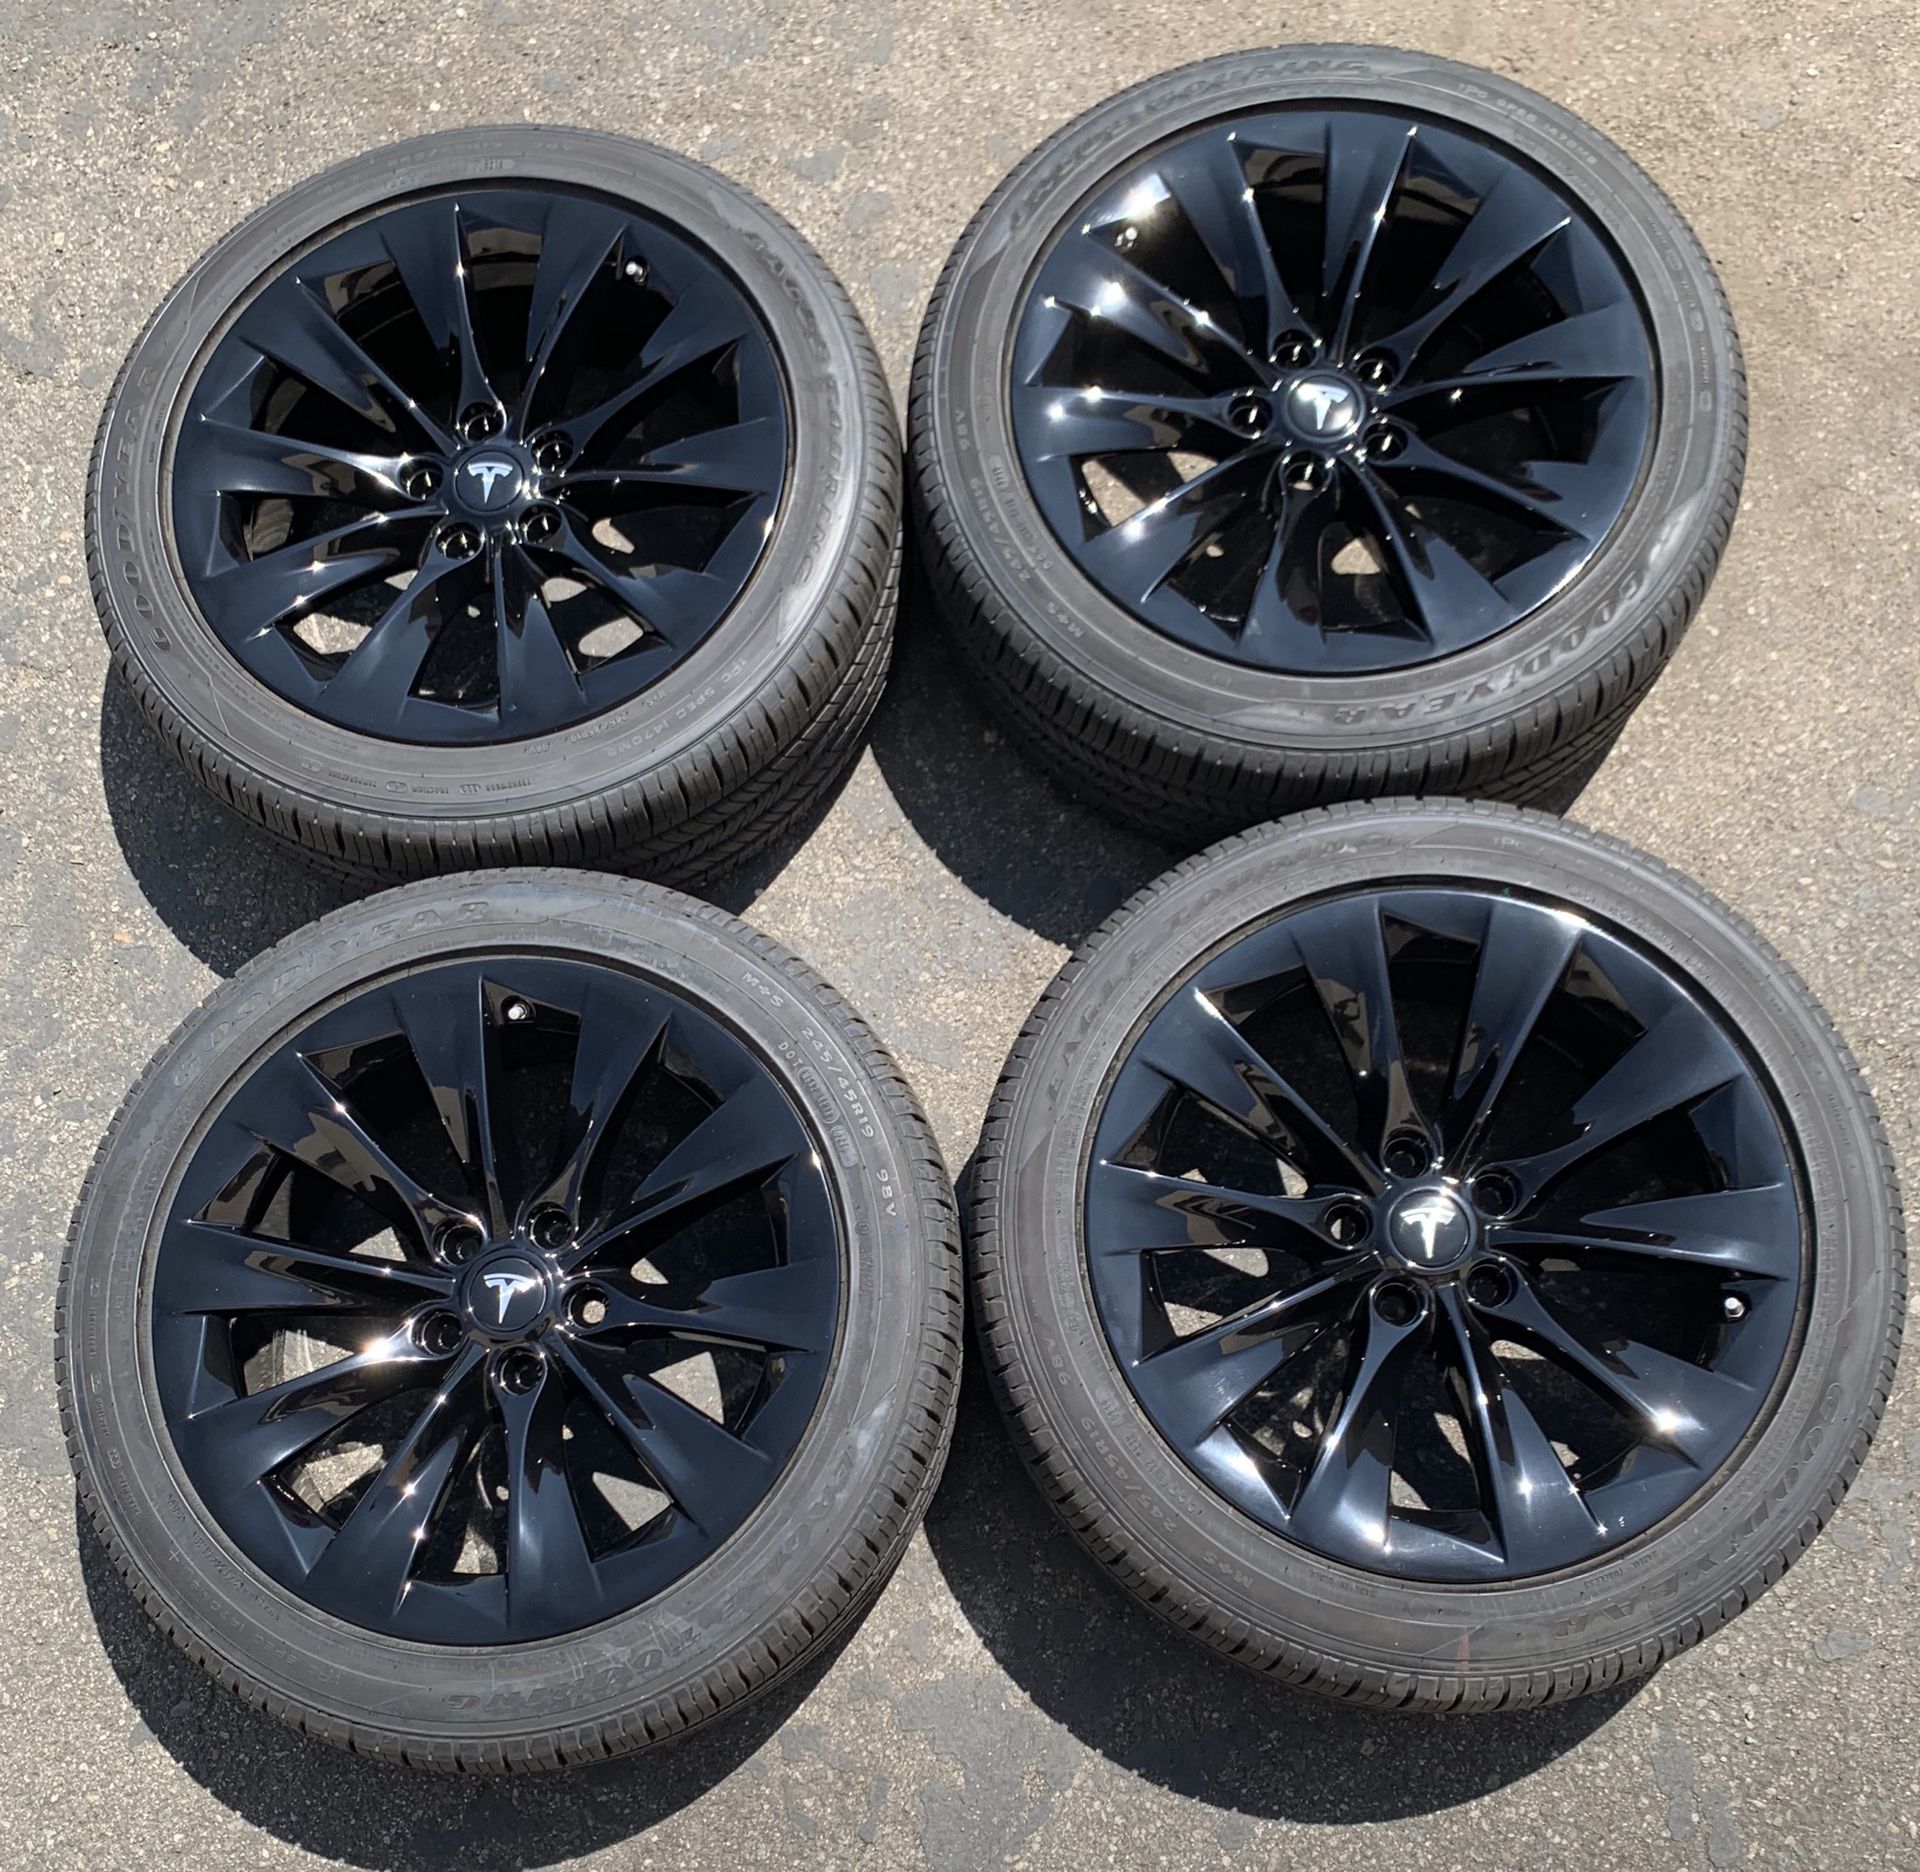 19” Tesla Model S Slipstream factory wheels and tires new gloss black sensors